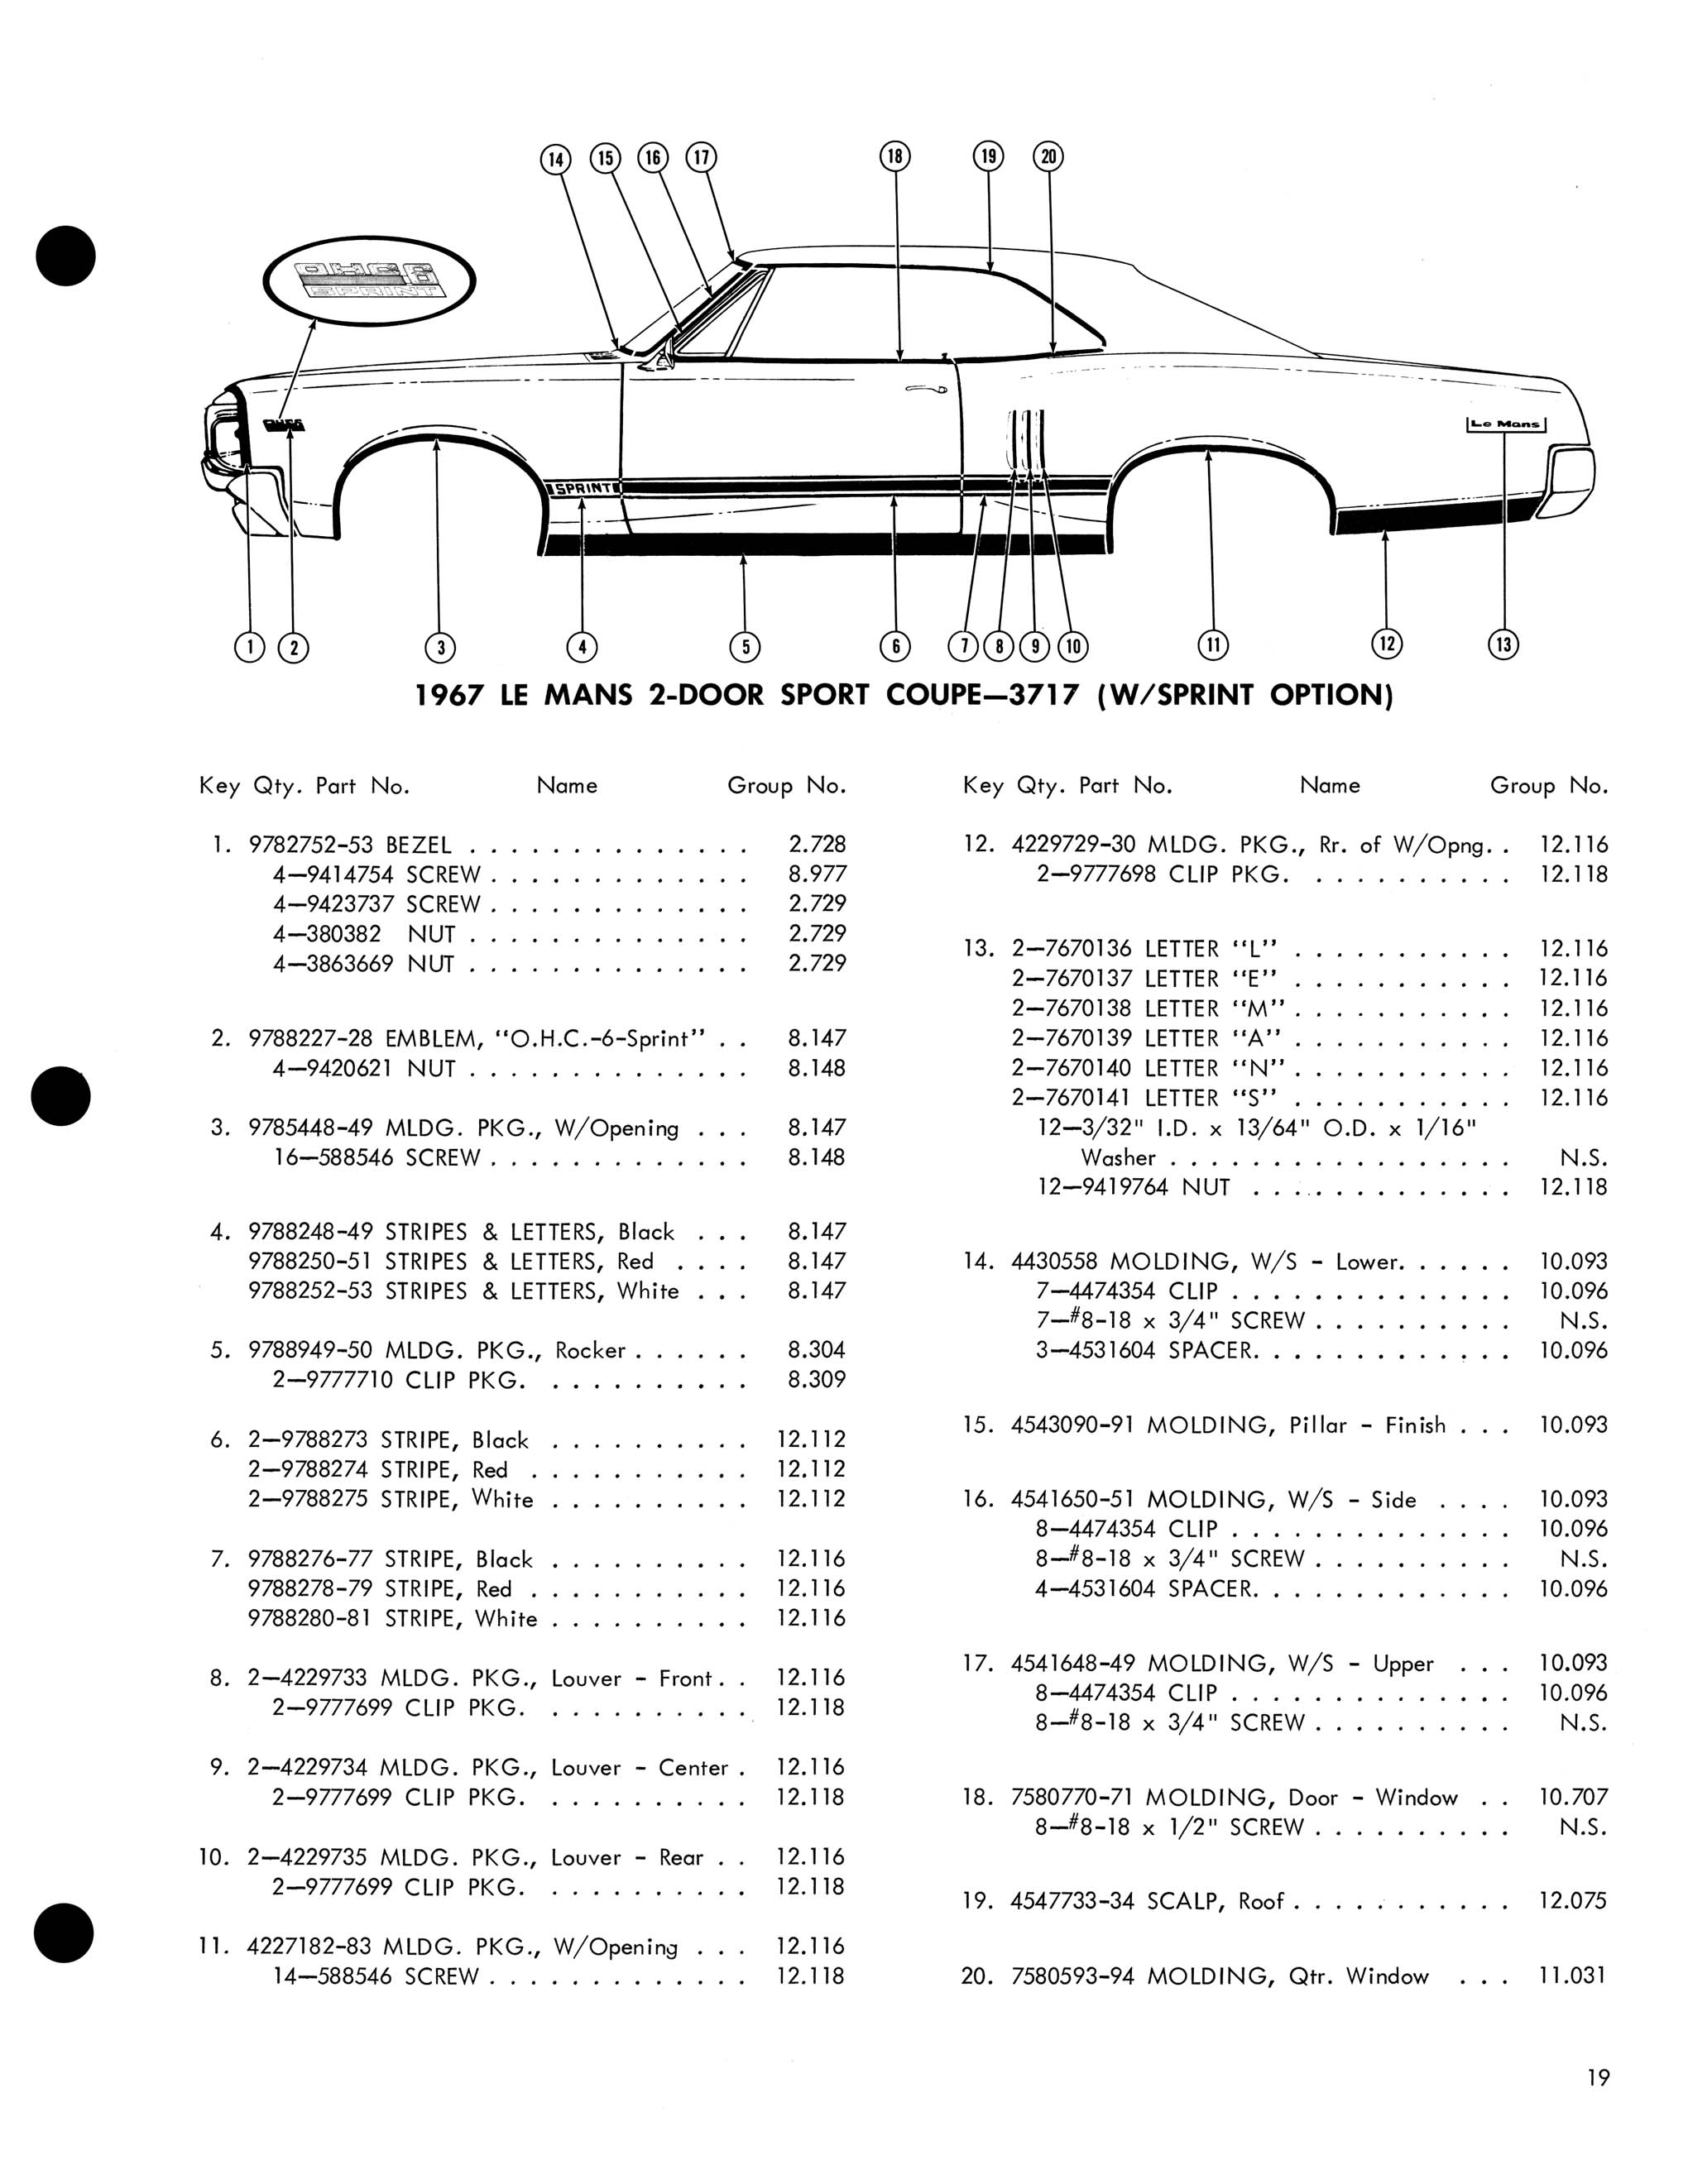 1967 Pontiac Molding and Clip Catalog-19